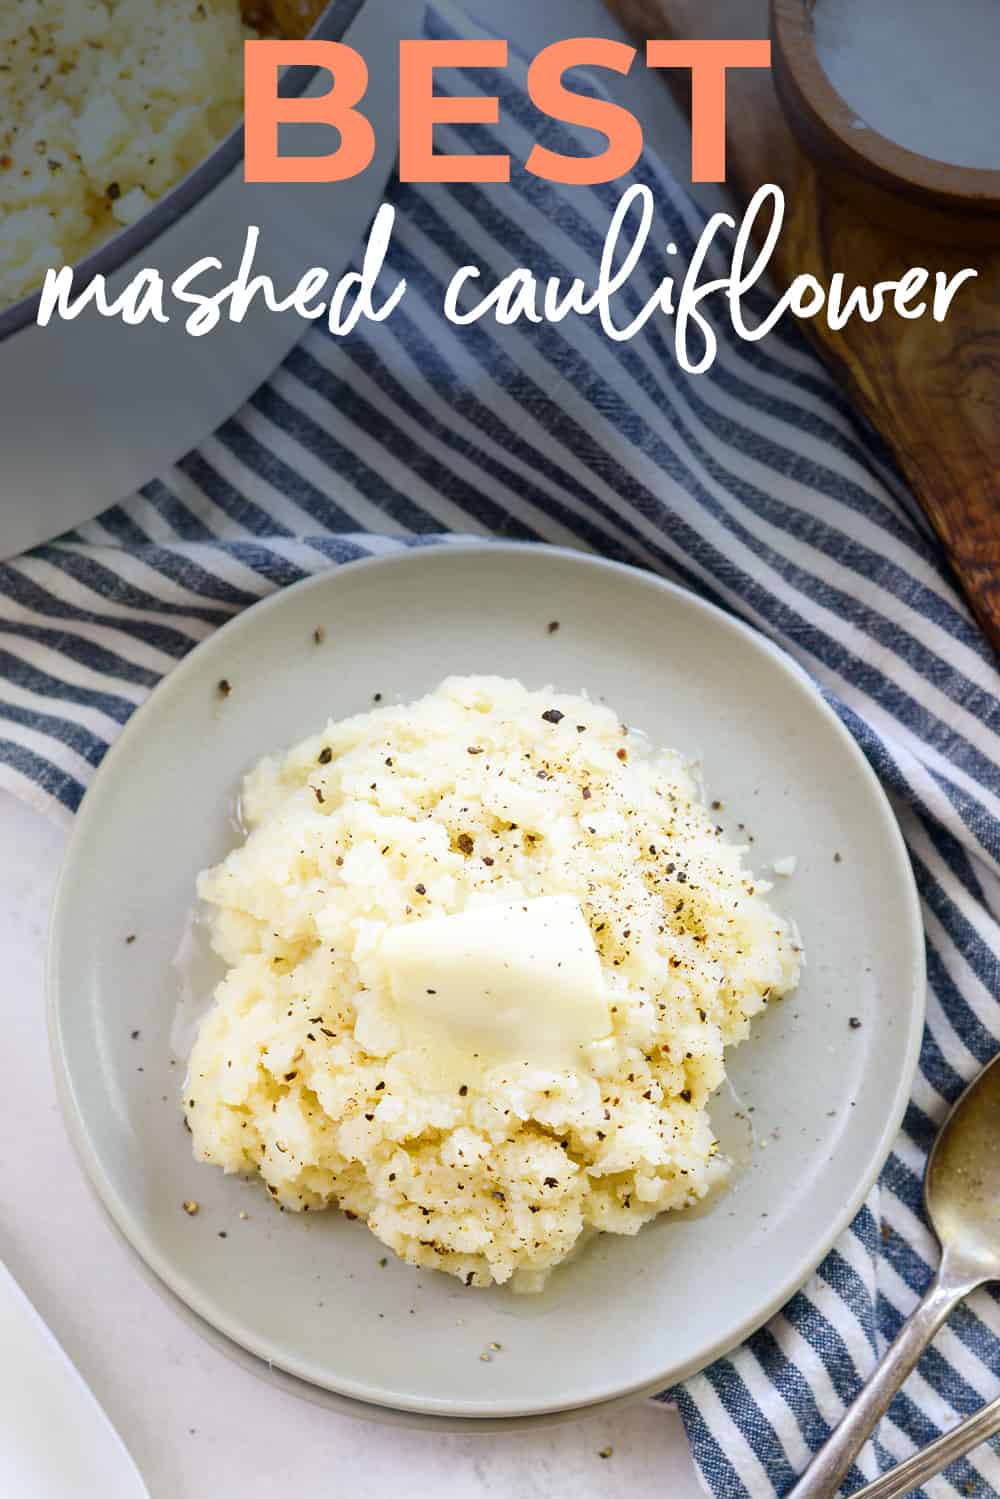 Mashed cauliflower on plate